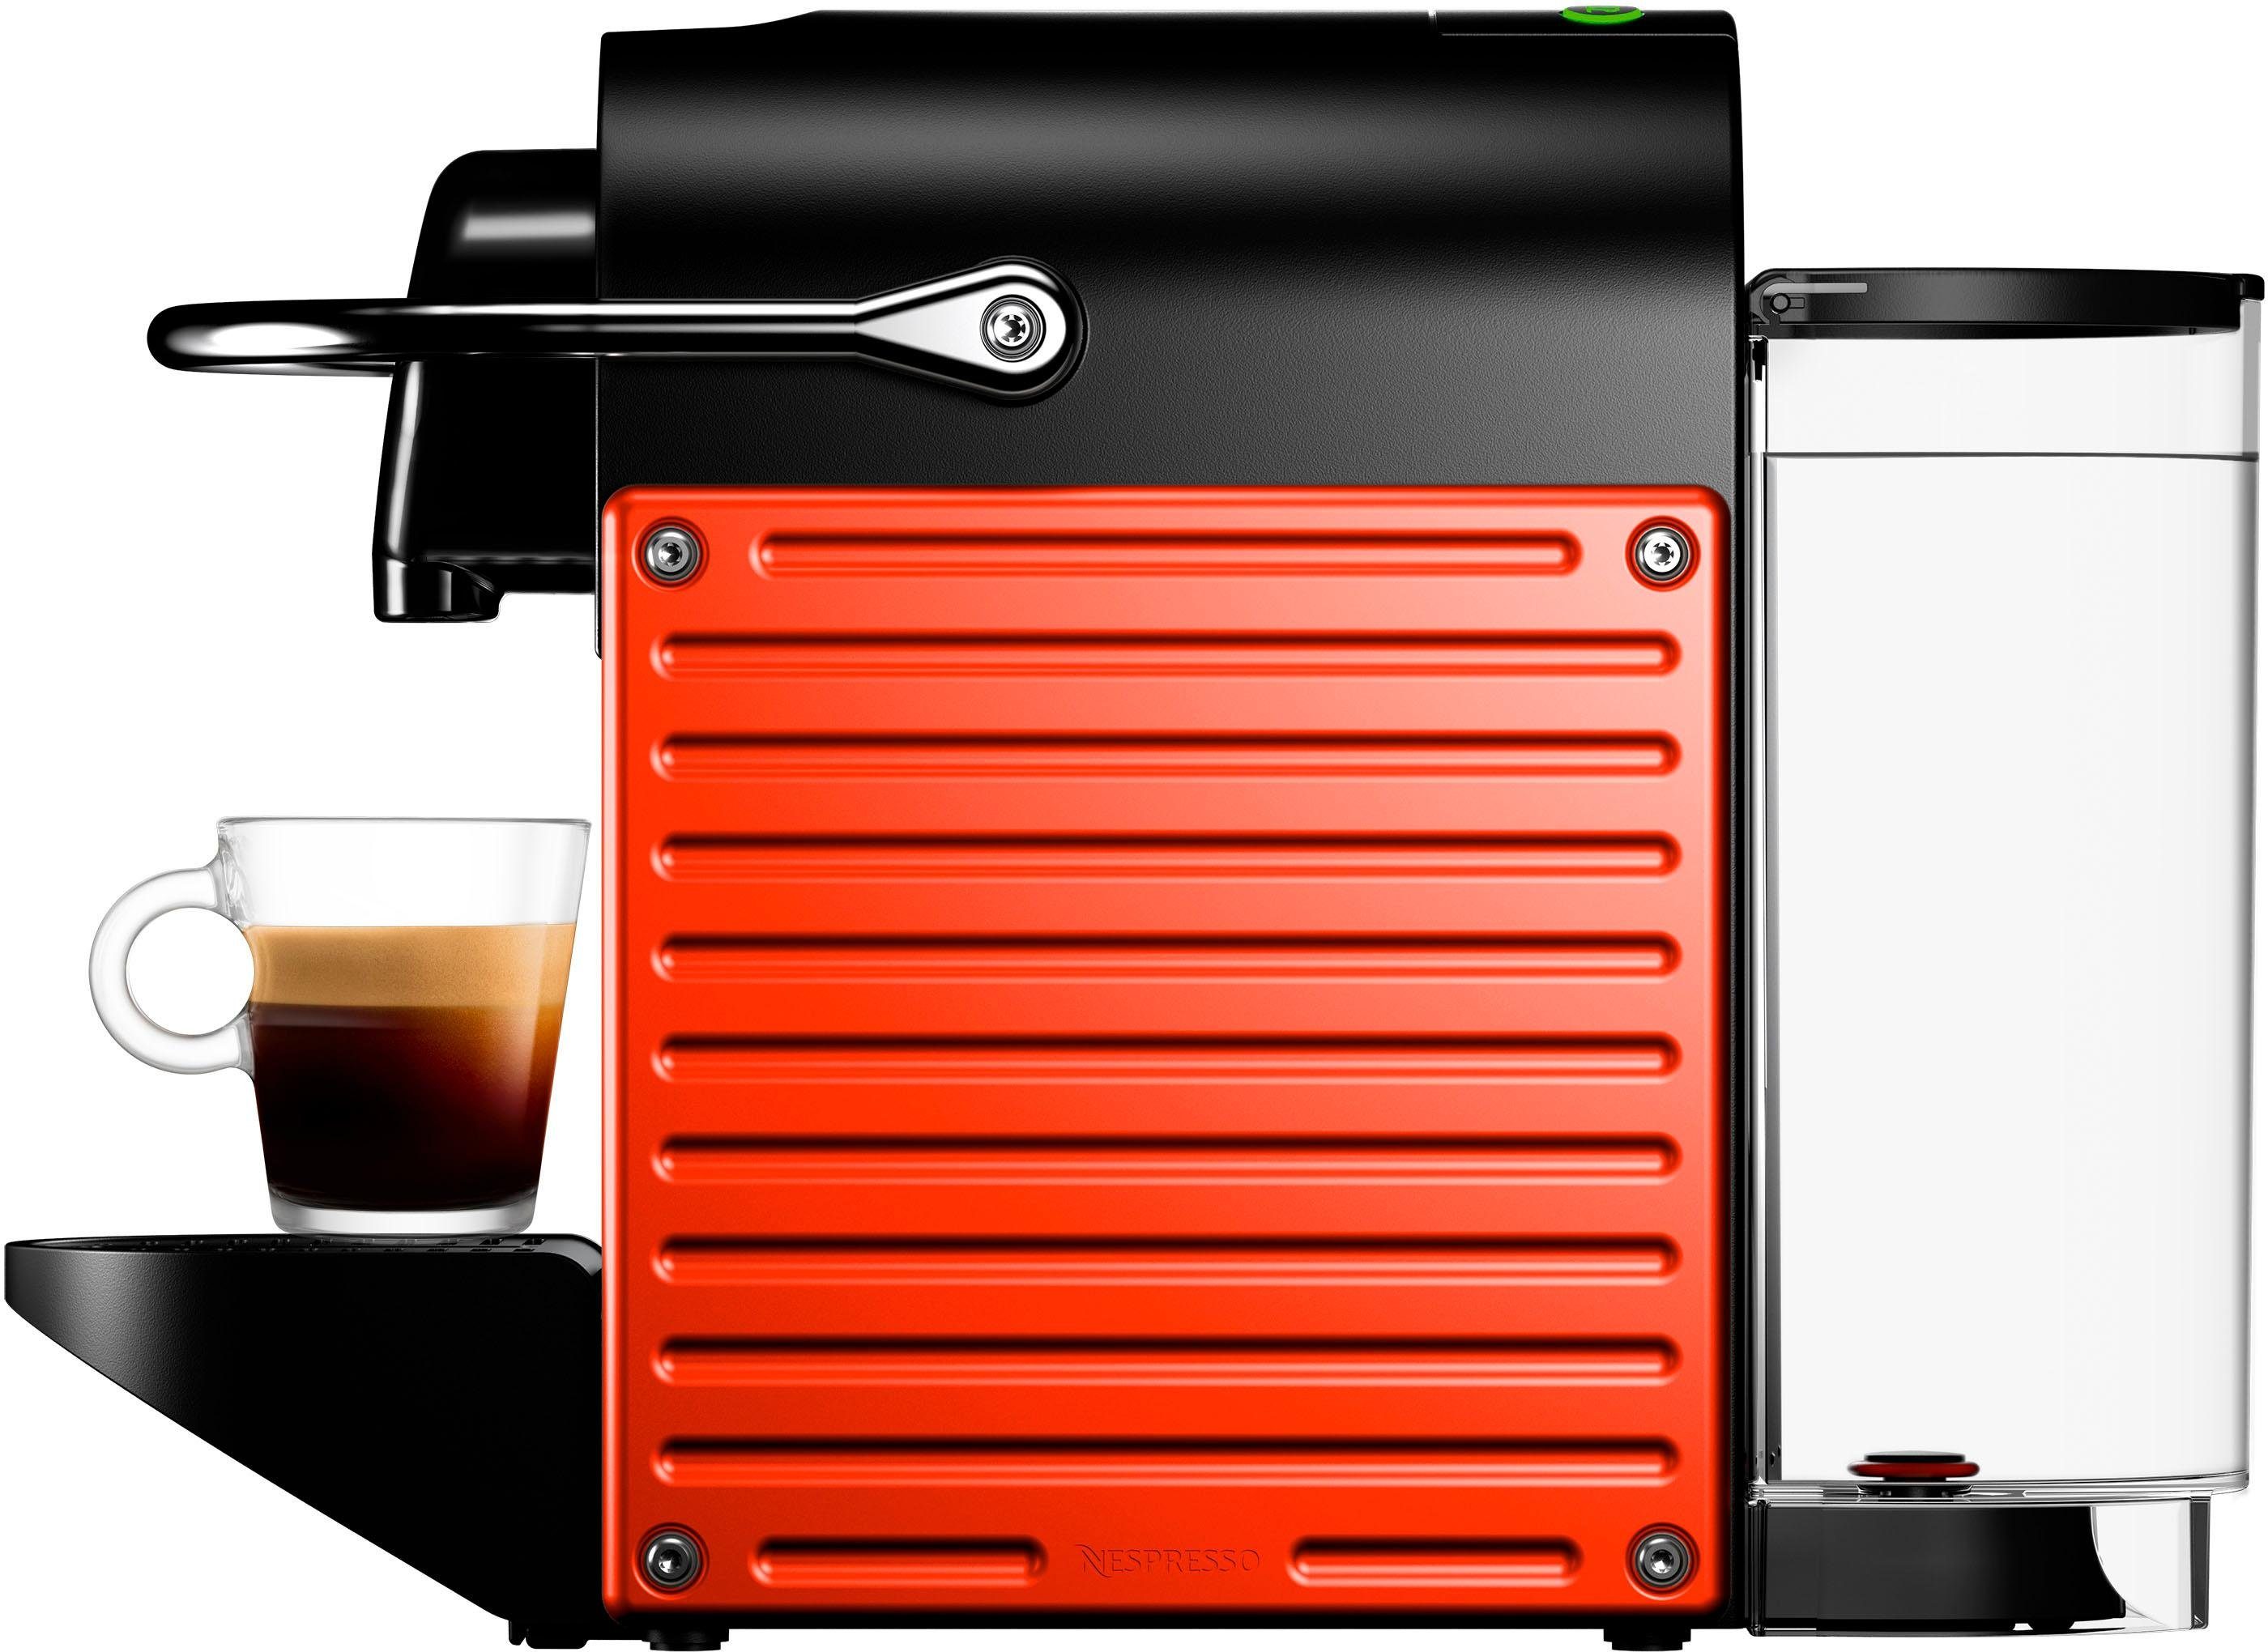 Red, Kapselmaschine Nespresso Pixie von Krups, mit Kapseln Willkommenspaket inkl. XN3045 14